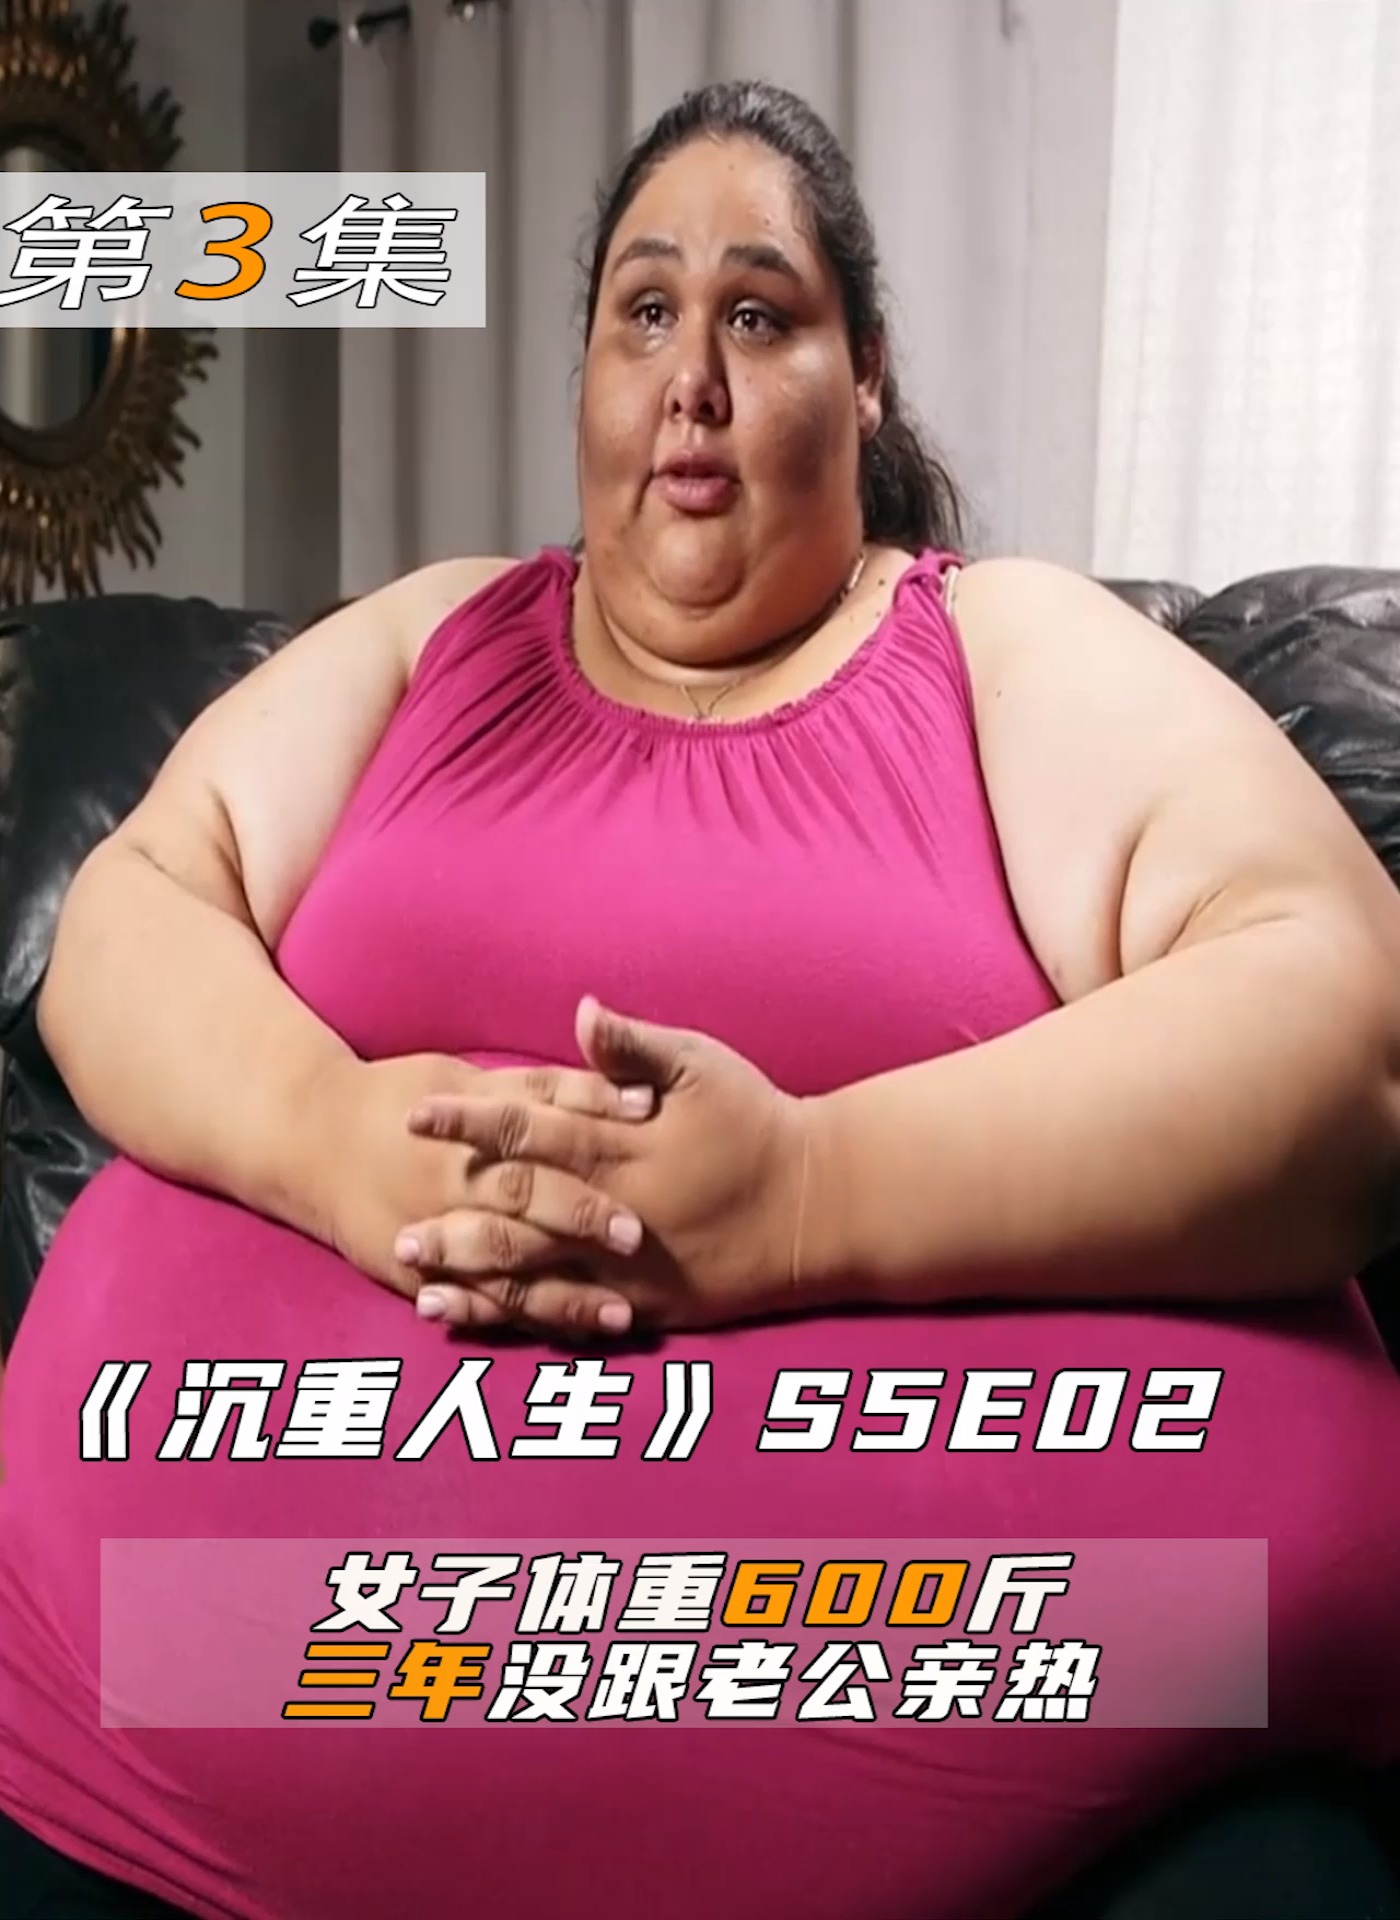 600斤女胖子摸肚子图片